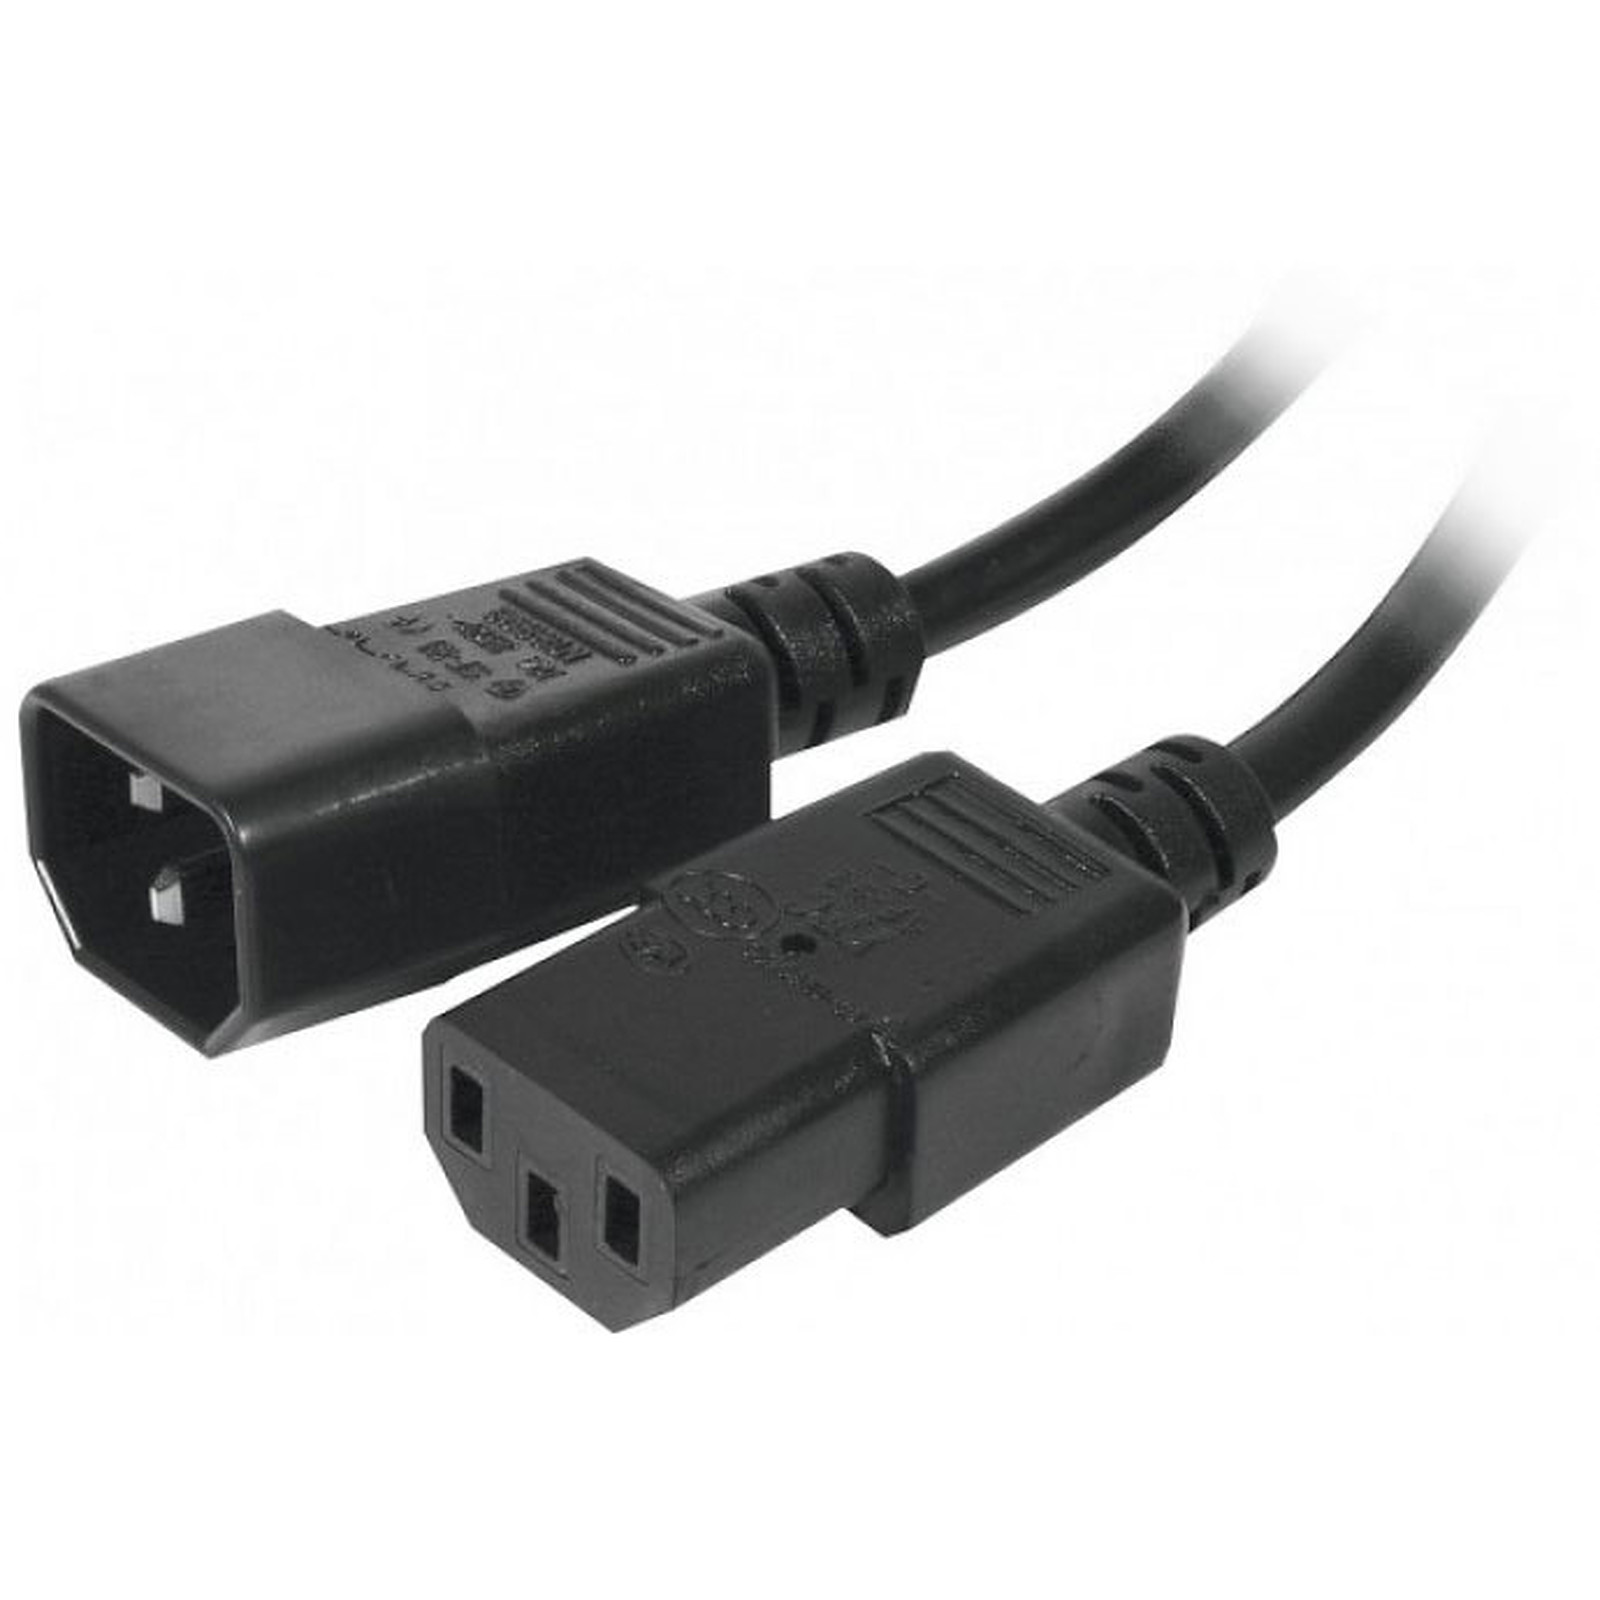 Rallonge d'alimentation pour PC, moniteur et onduleur (5 m) - (coloris noir) - Cable Secteur Generique